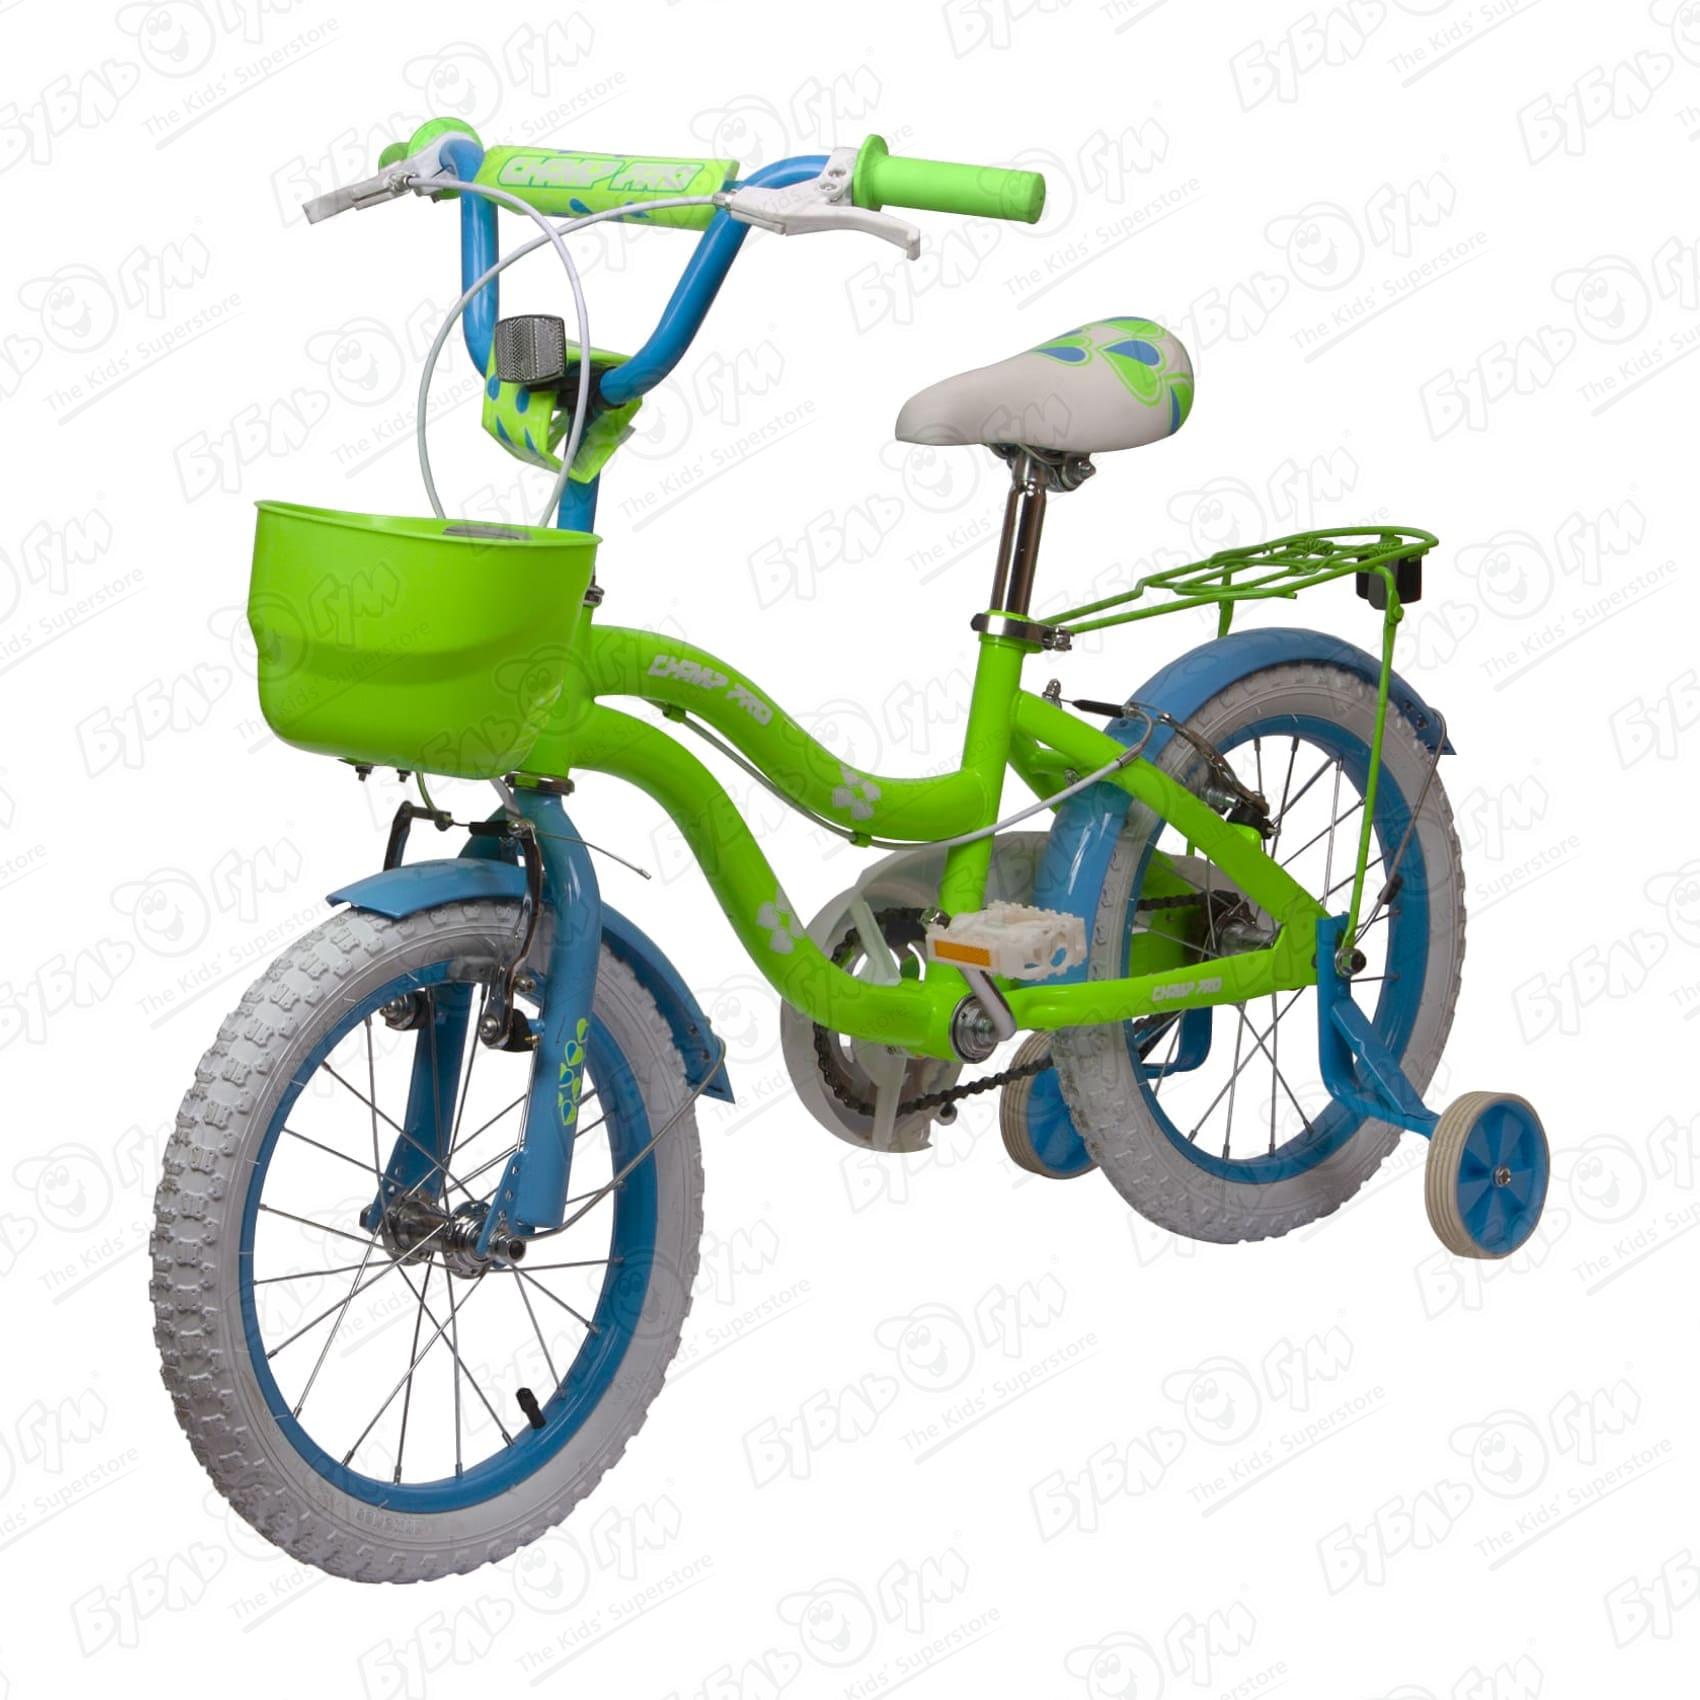 Велосипед Champ Pro детский G16 зеленый велосипед foxx 20 brief зеленый сталь тормоз нож крылья багажник